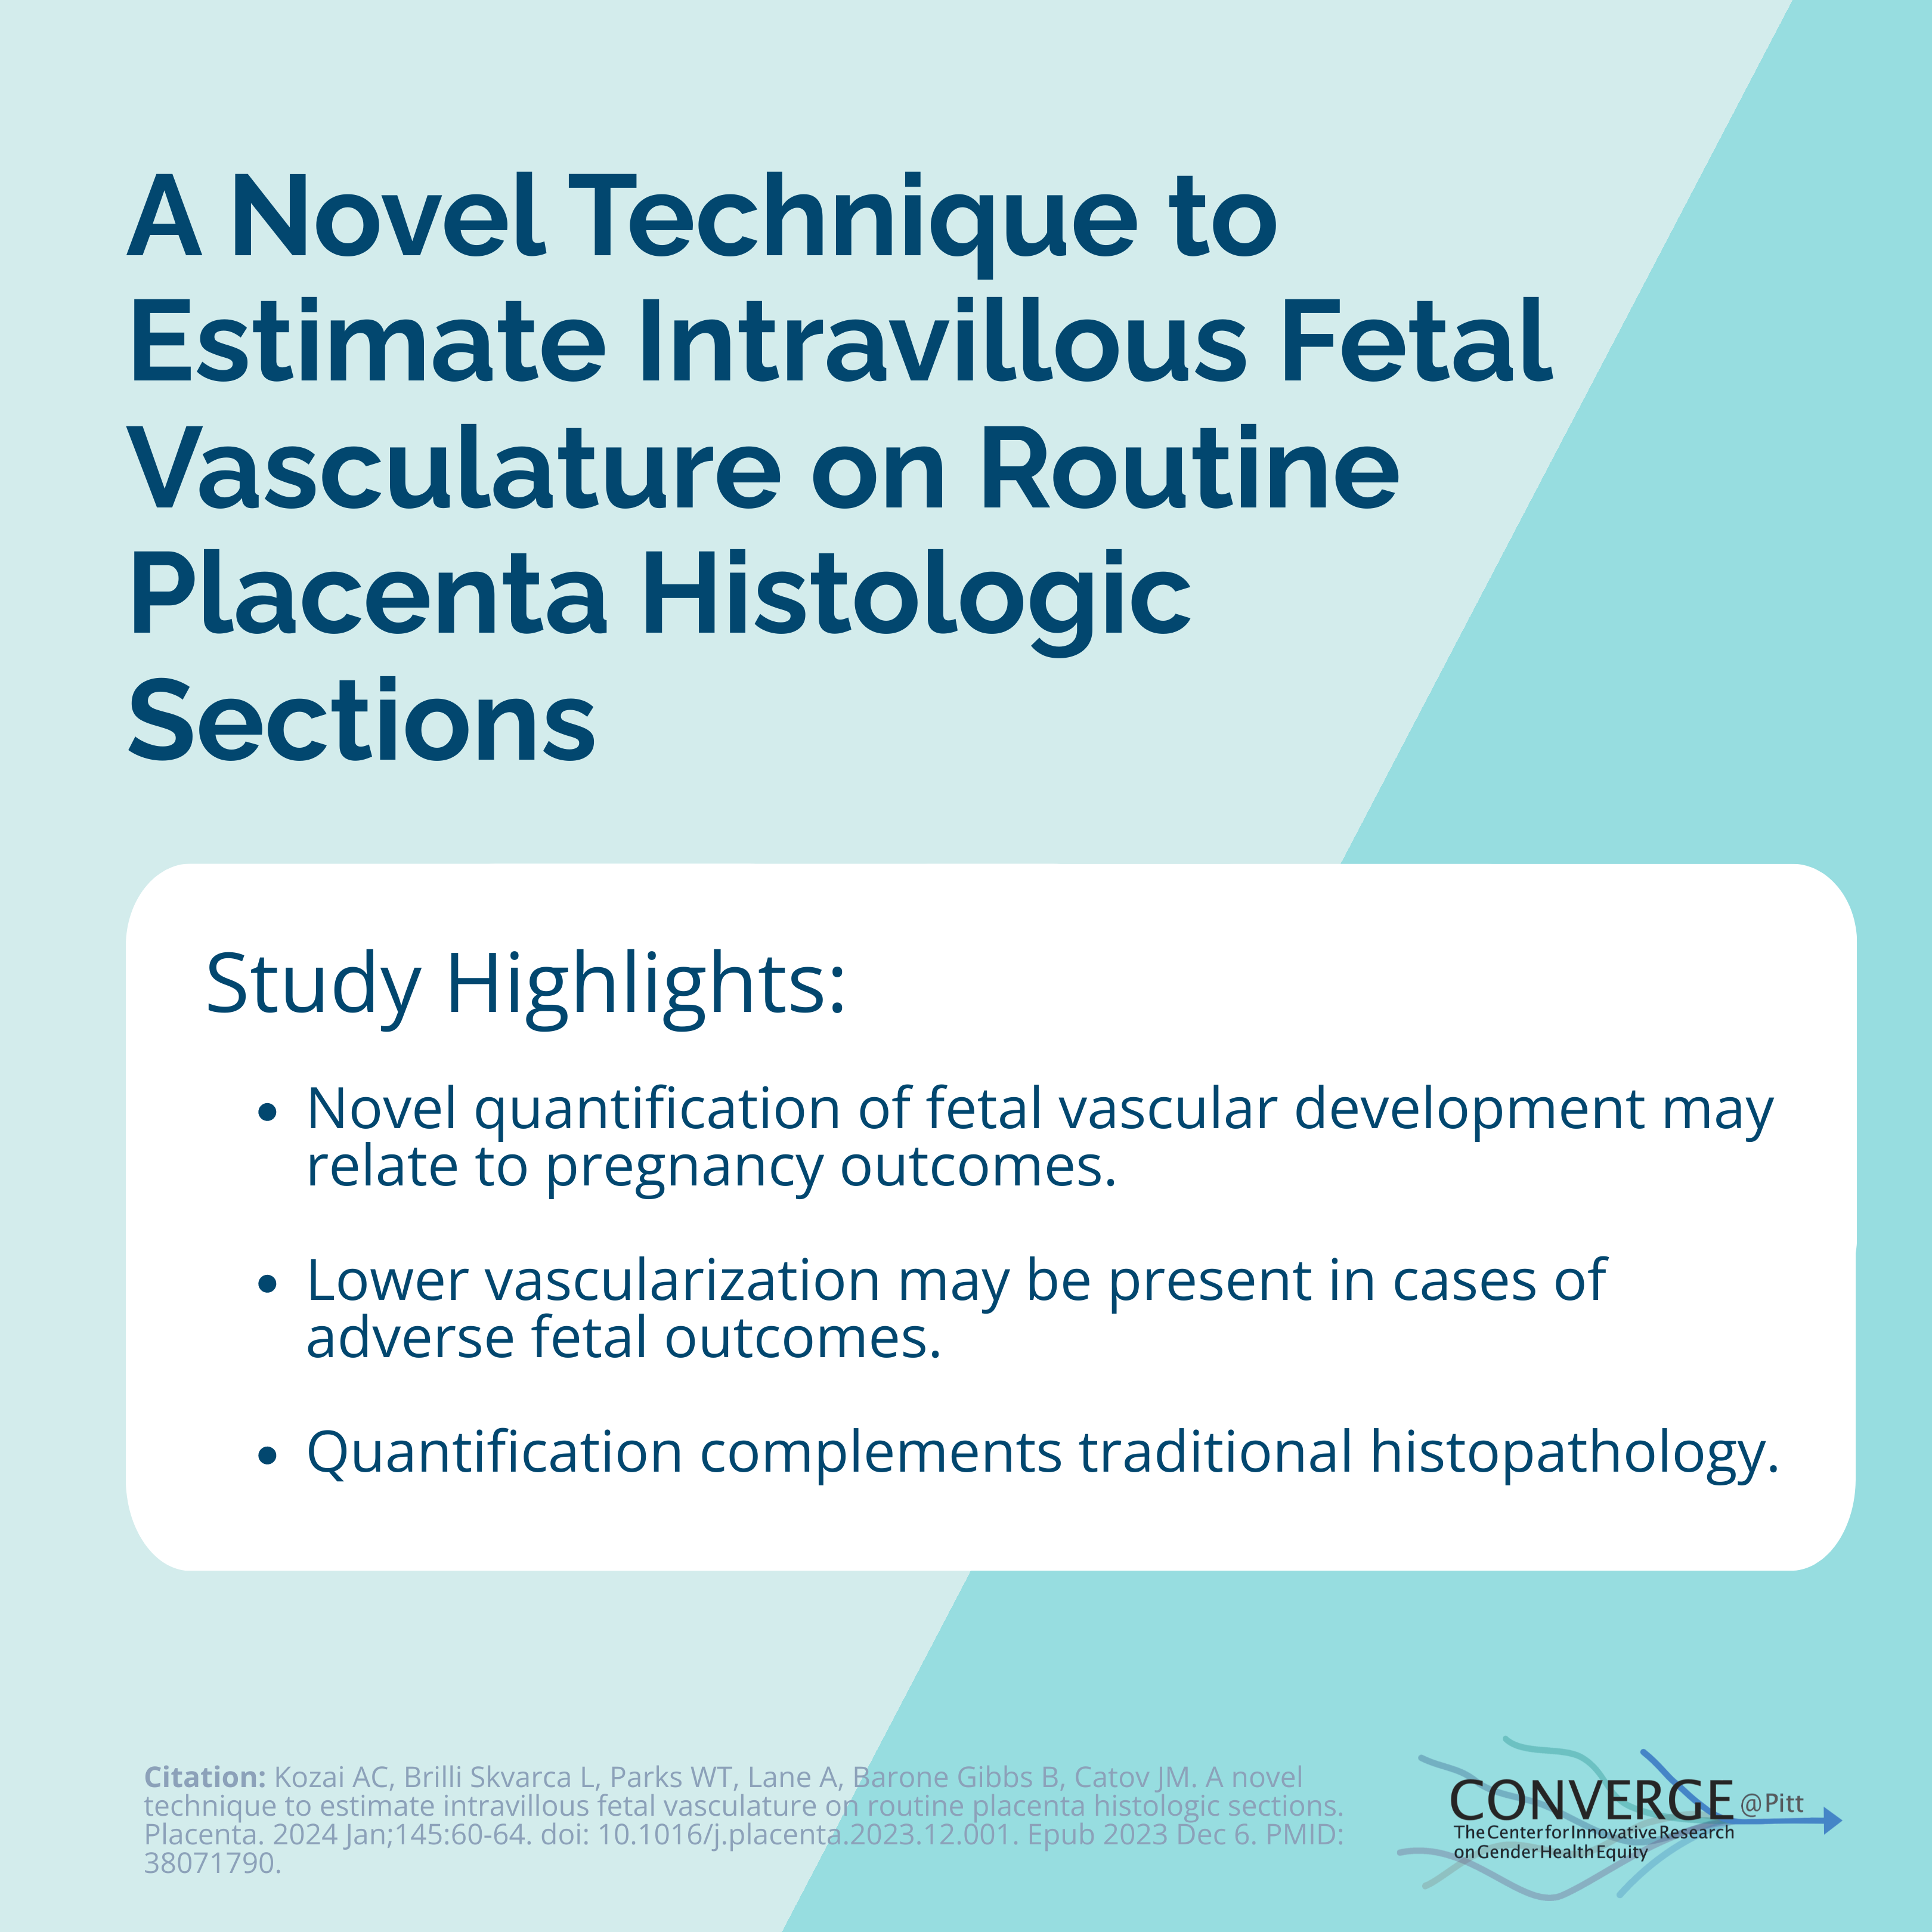 A novel technique to estimate intravillous fetal vasculature on routine placenta histologic sections